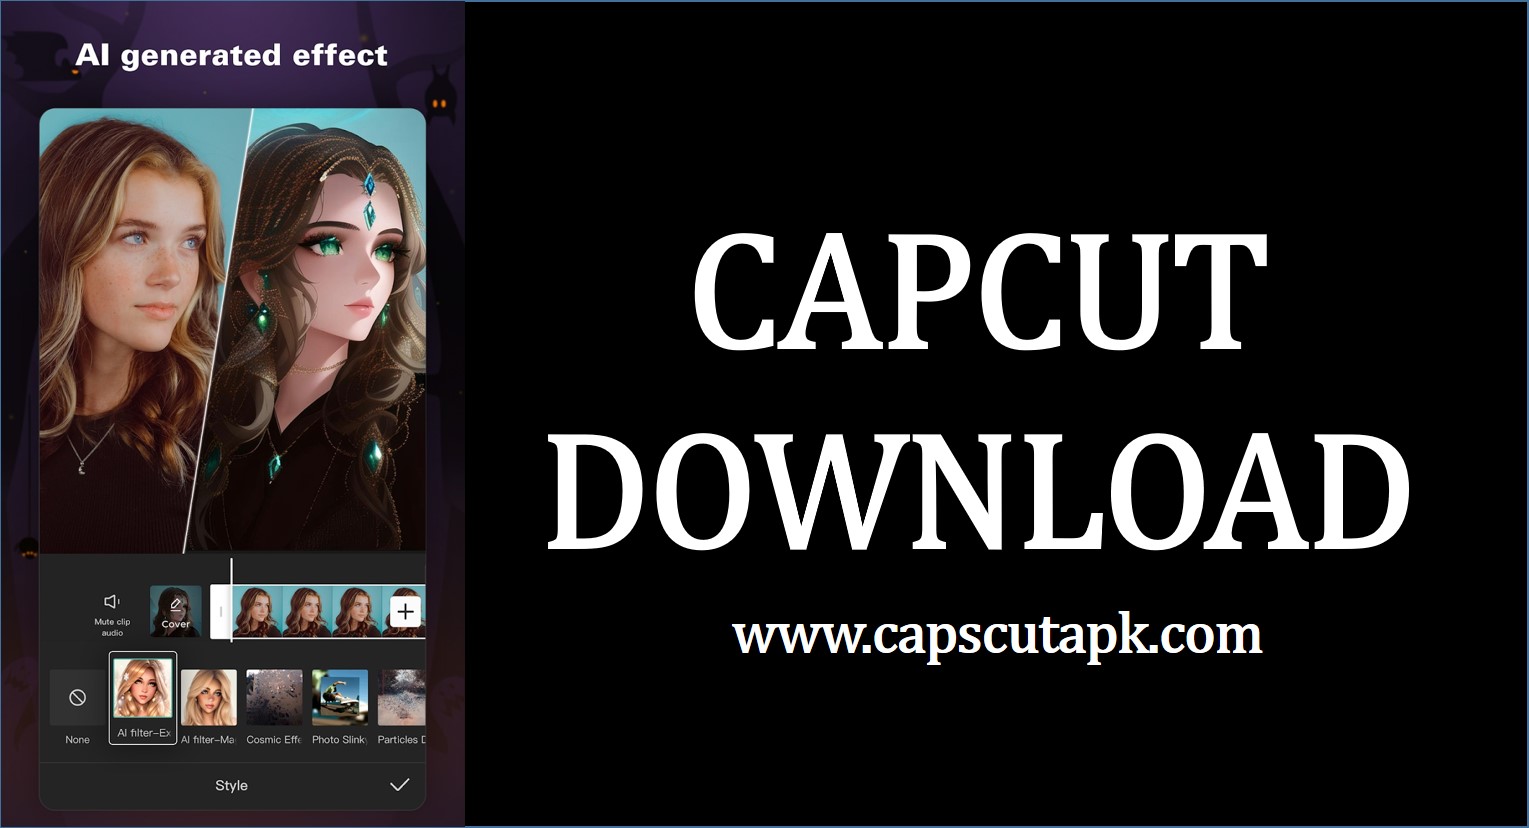 capcut apk download